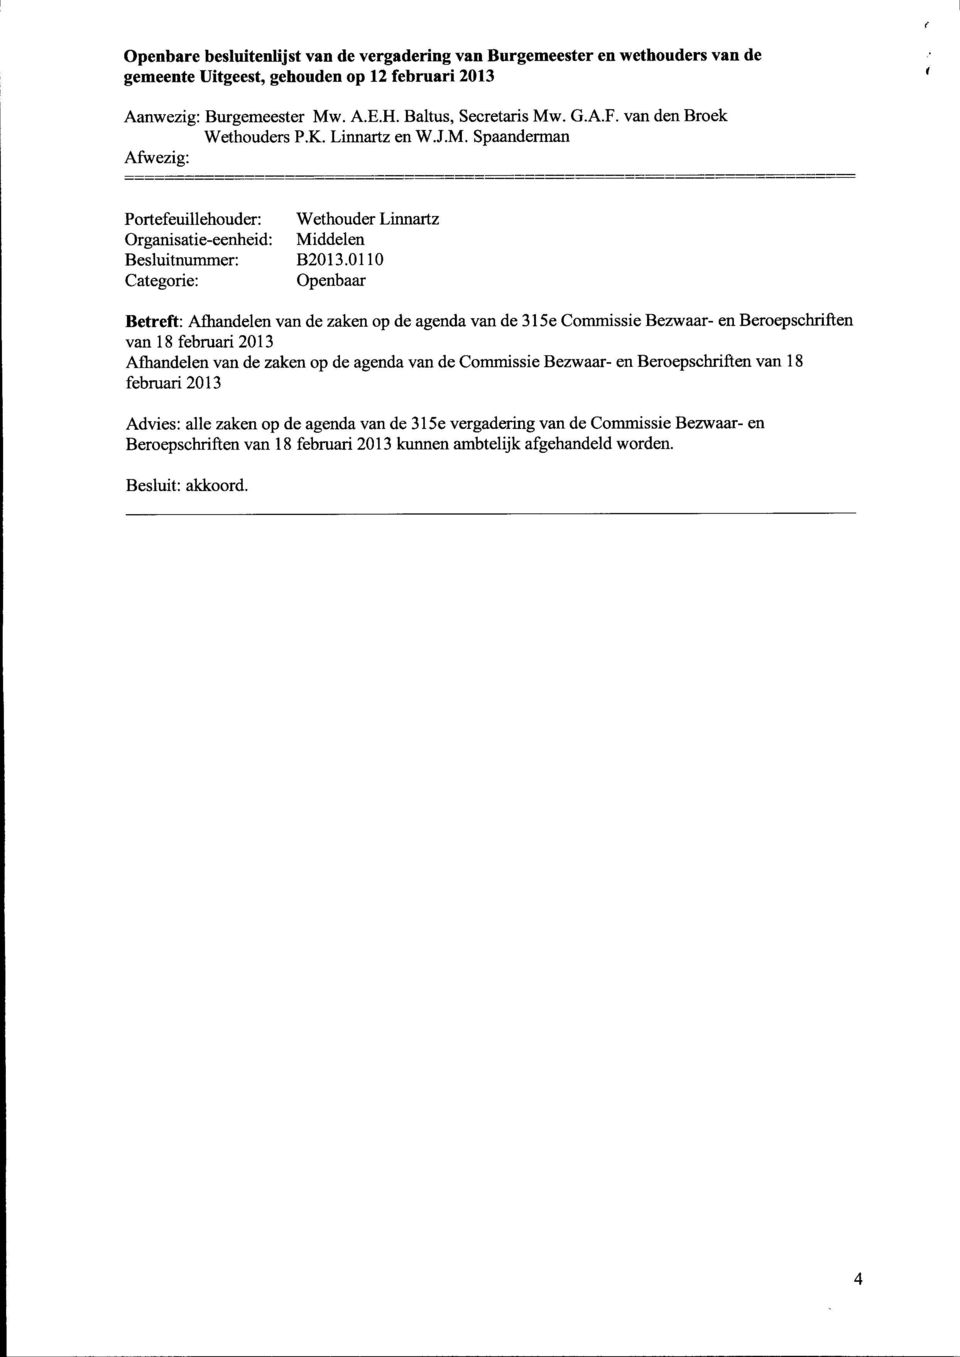 Beroepschriften van 18 februari 2013 Afhandelen van de zaken op de agenda van de Commissie Bezwaar-